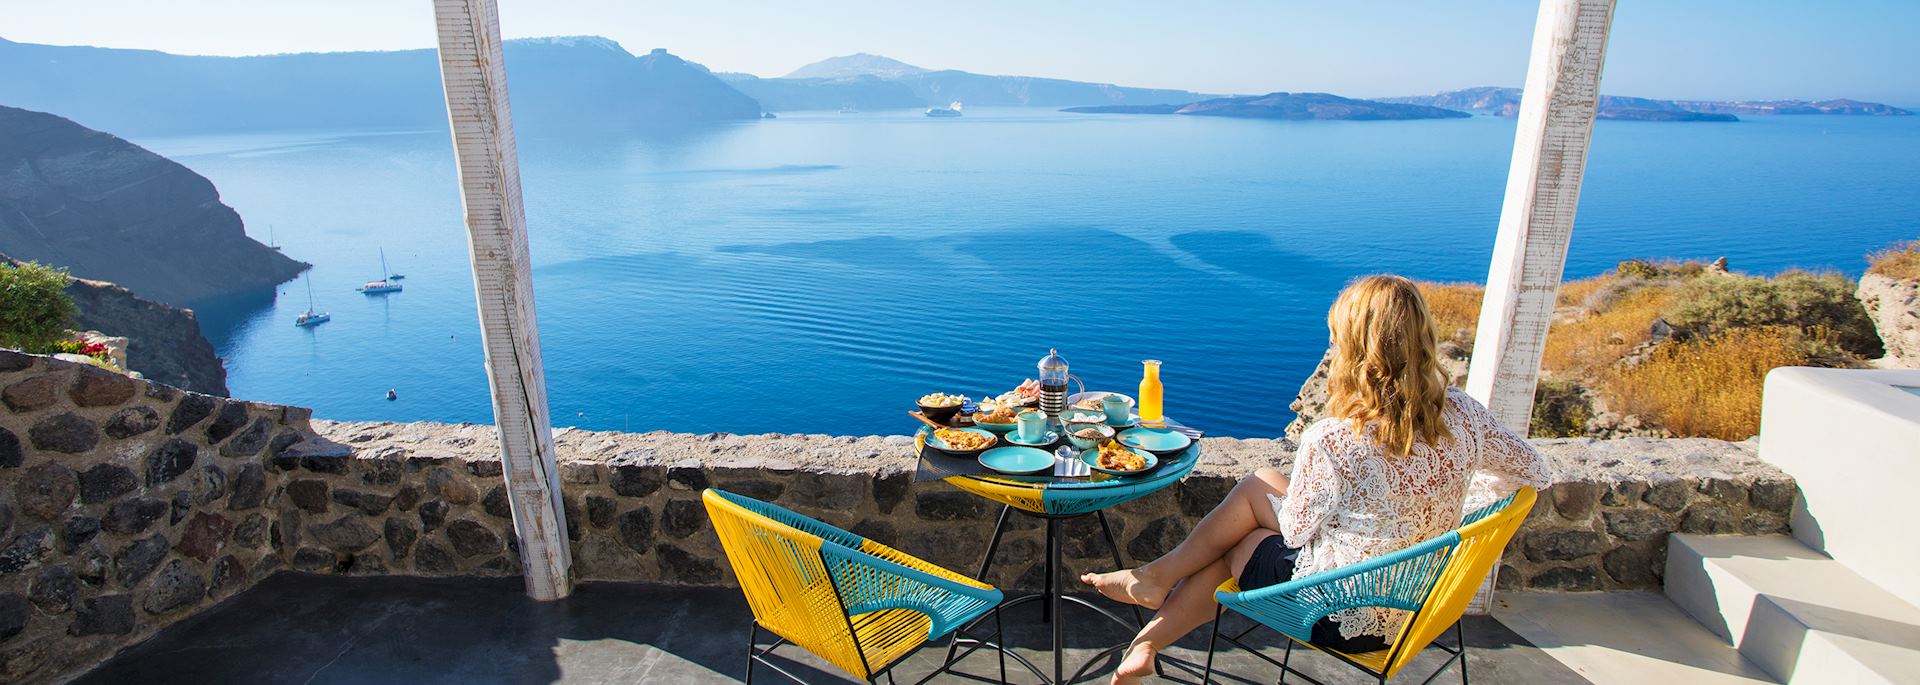 Breakfast overlooking Santorini in Greece